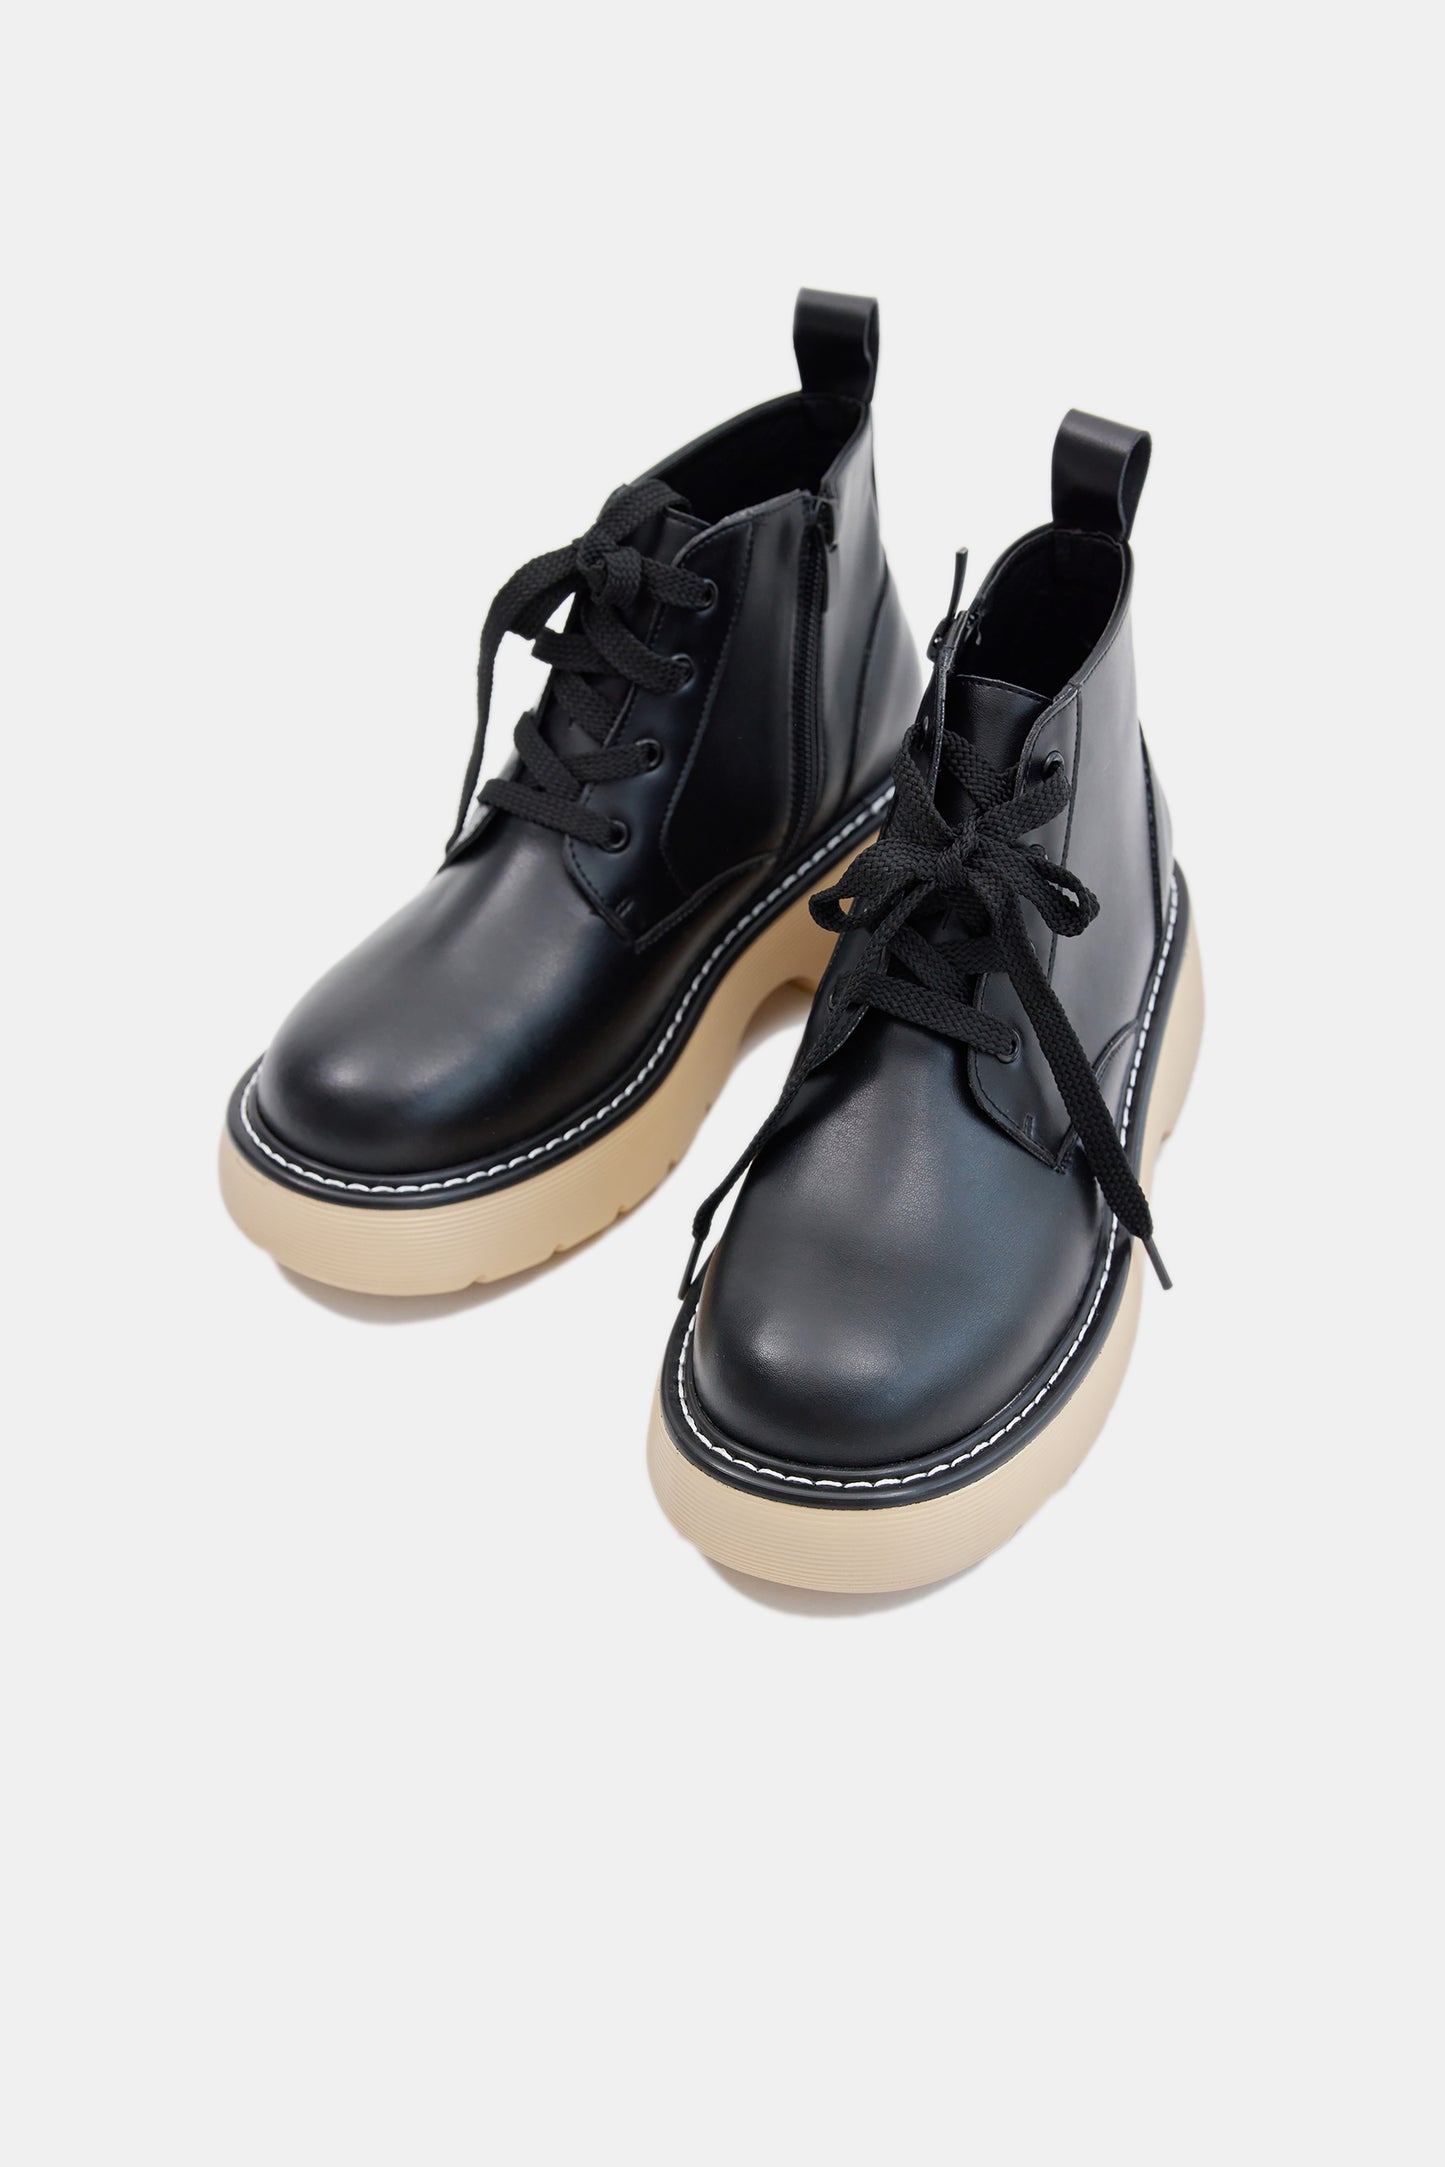 Combat Lace Up Boots, Black & Beige